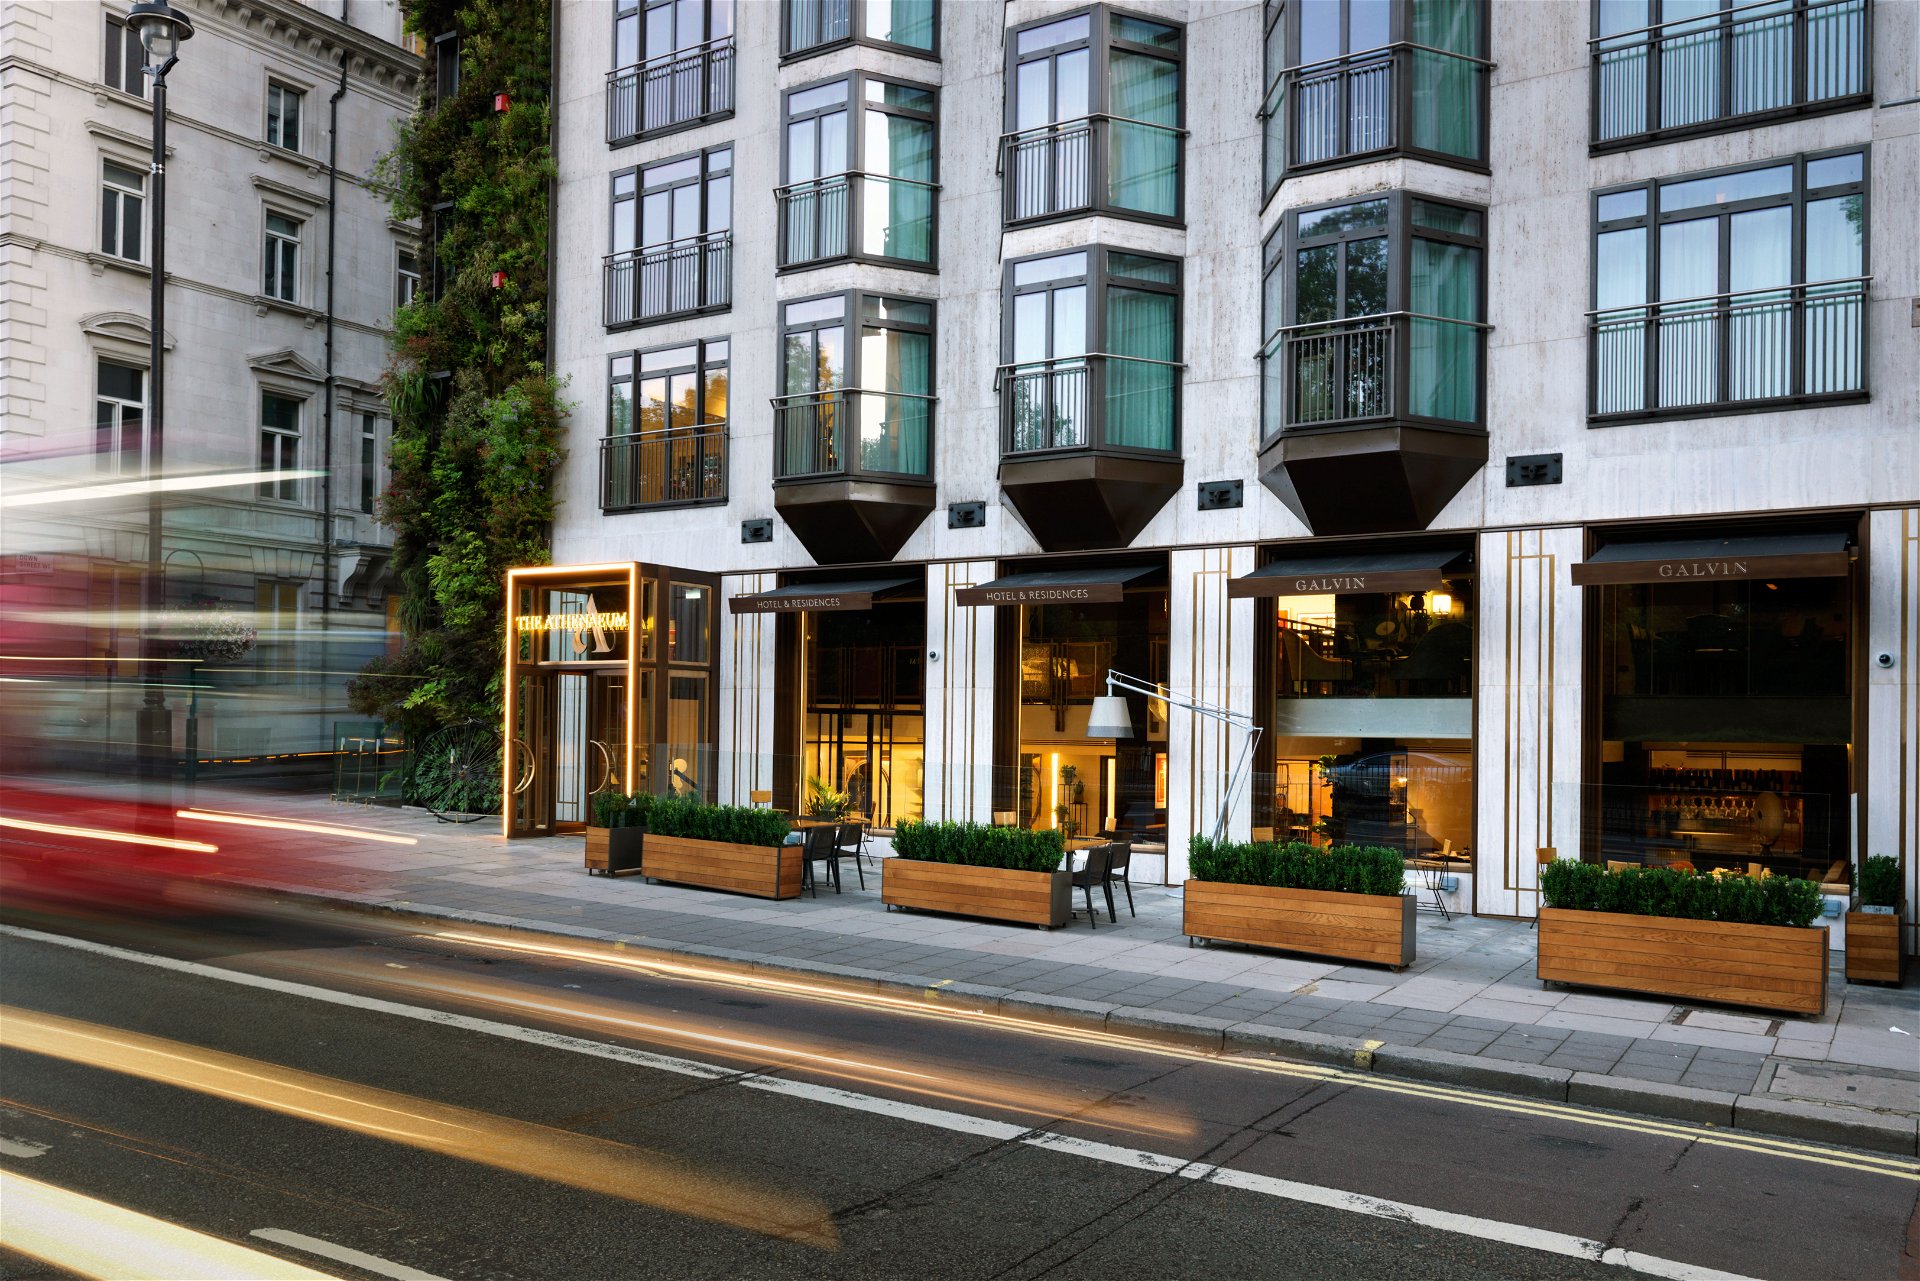 Athenaeum, London: Im Luxusviertel Mayfair gelegen, bietet das edelrenovierte Hotel insgesamt 18 Townhouse Residences mit 50 Quadratmetern inklusive Küche, eigenem Zugang, Spa und 24-Stunden-In-Room-Dining-Service. athenaeumhotel.com